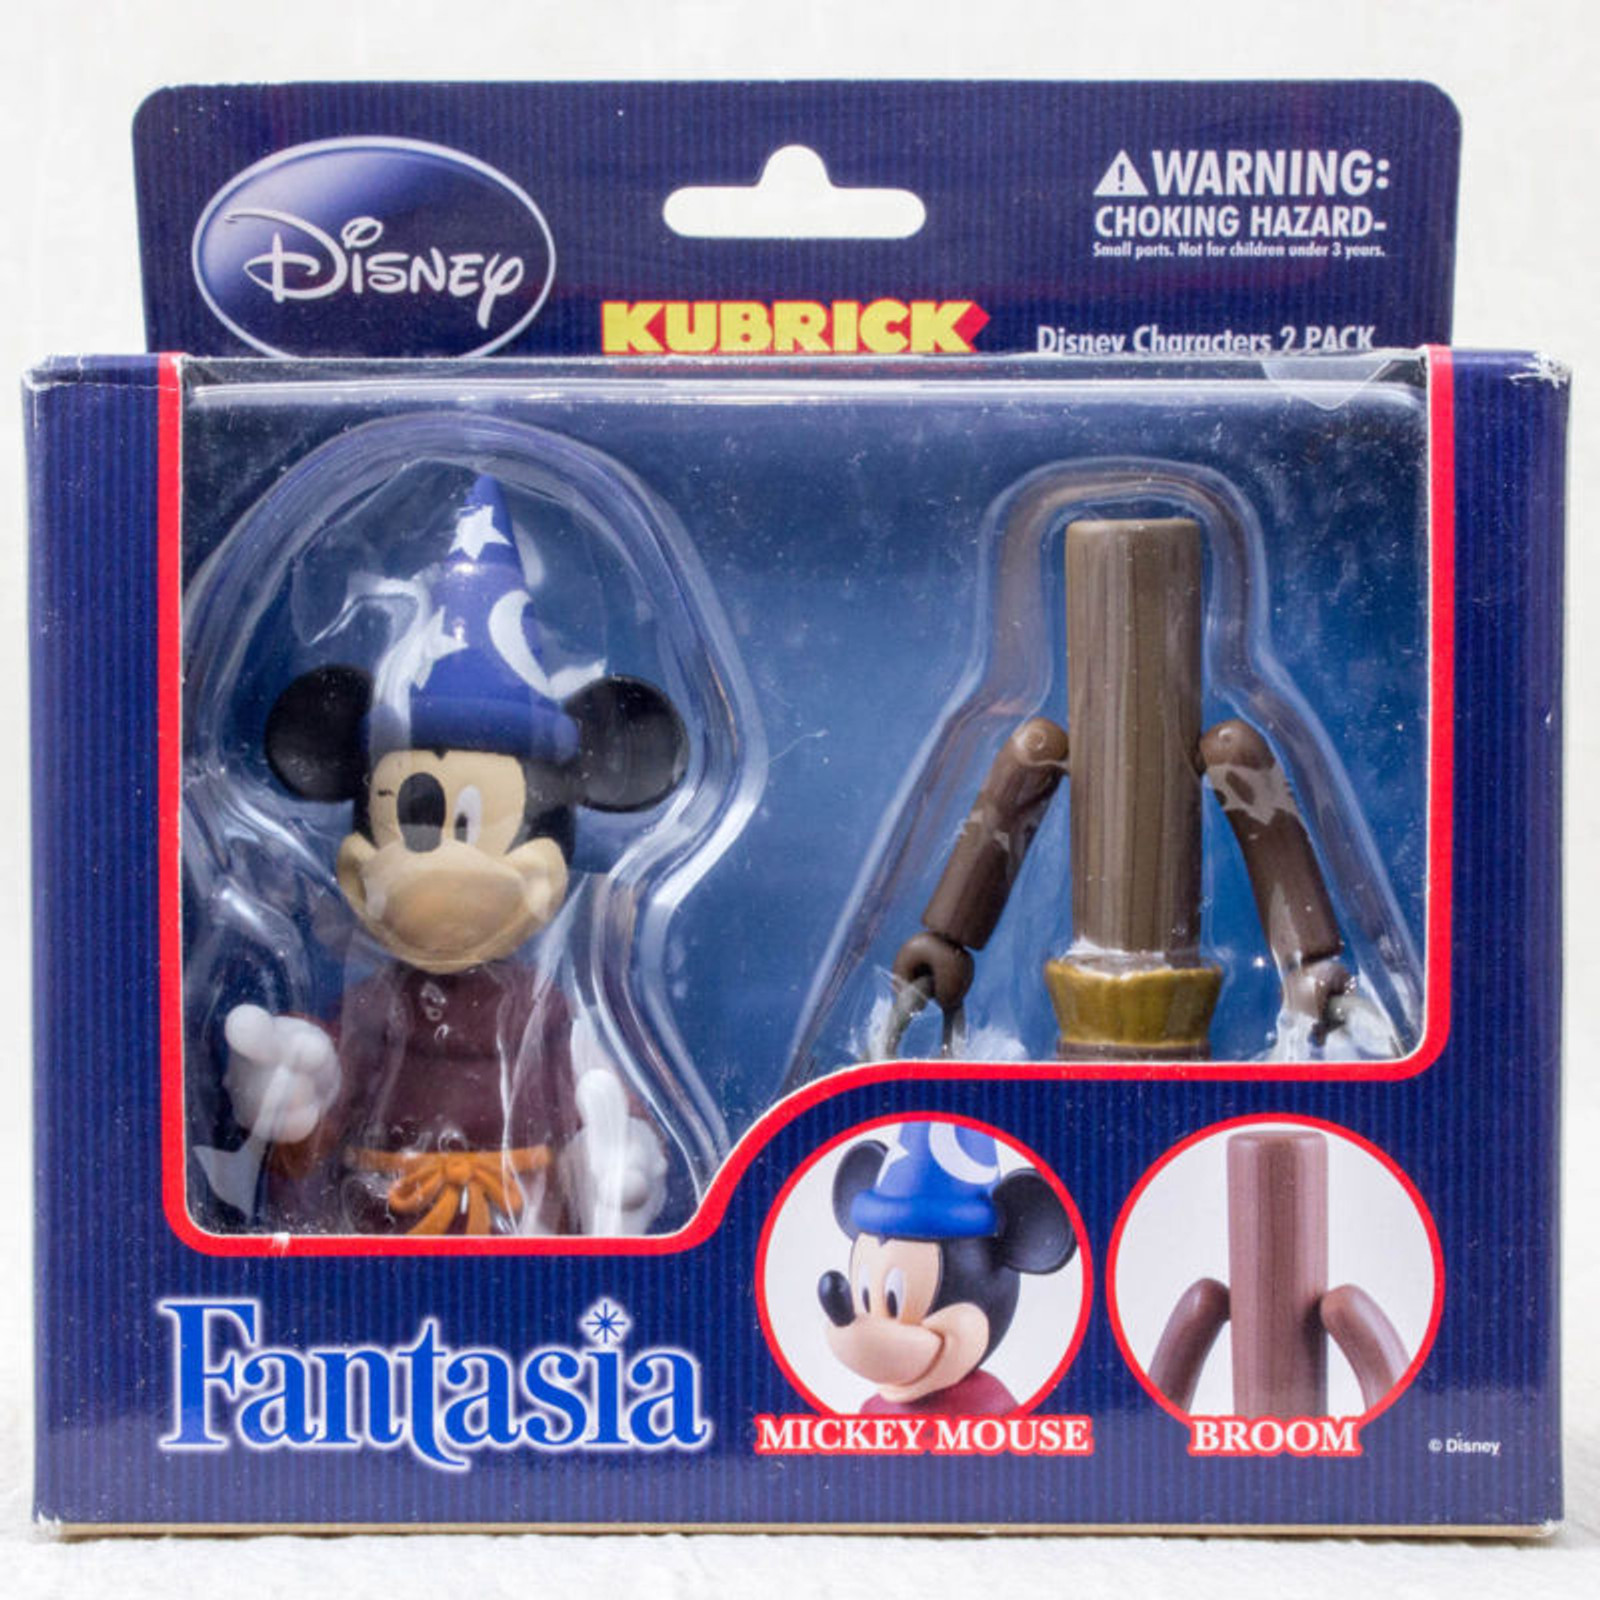 Disney Mickey Mouse & Broom Fantasia figure set  Kubrick Medicom Toy JAPAN ANIME